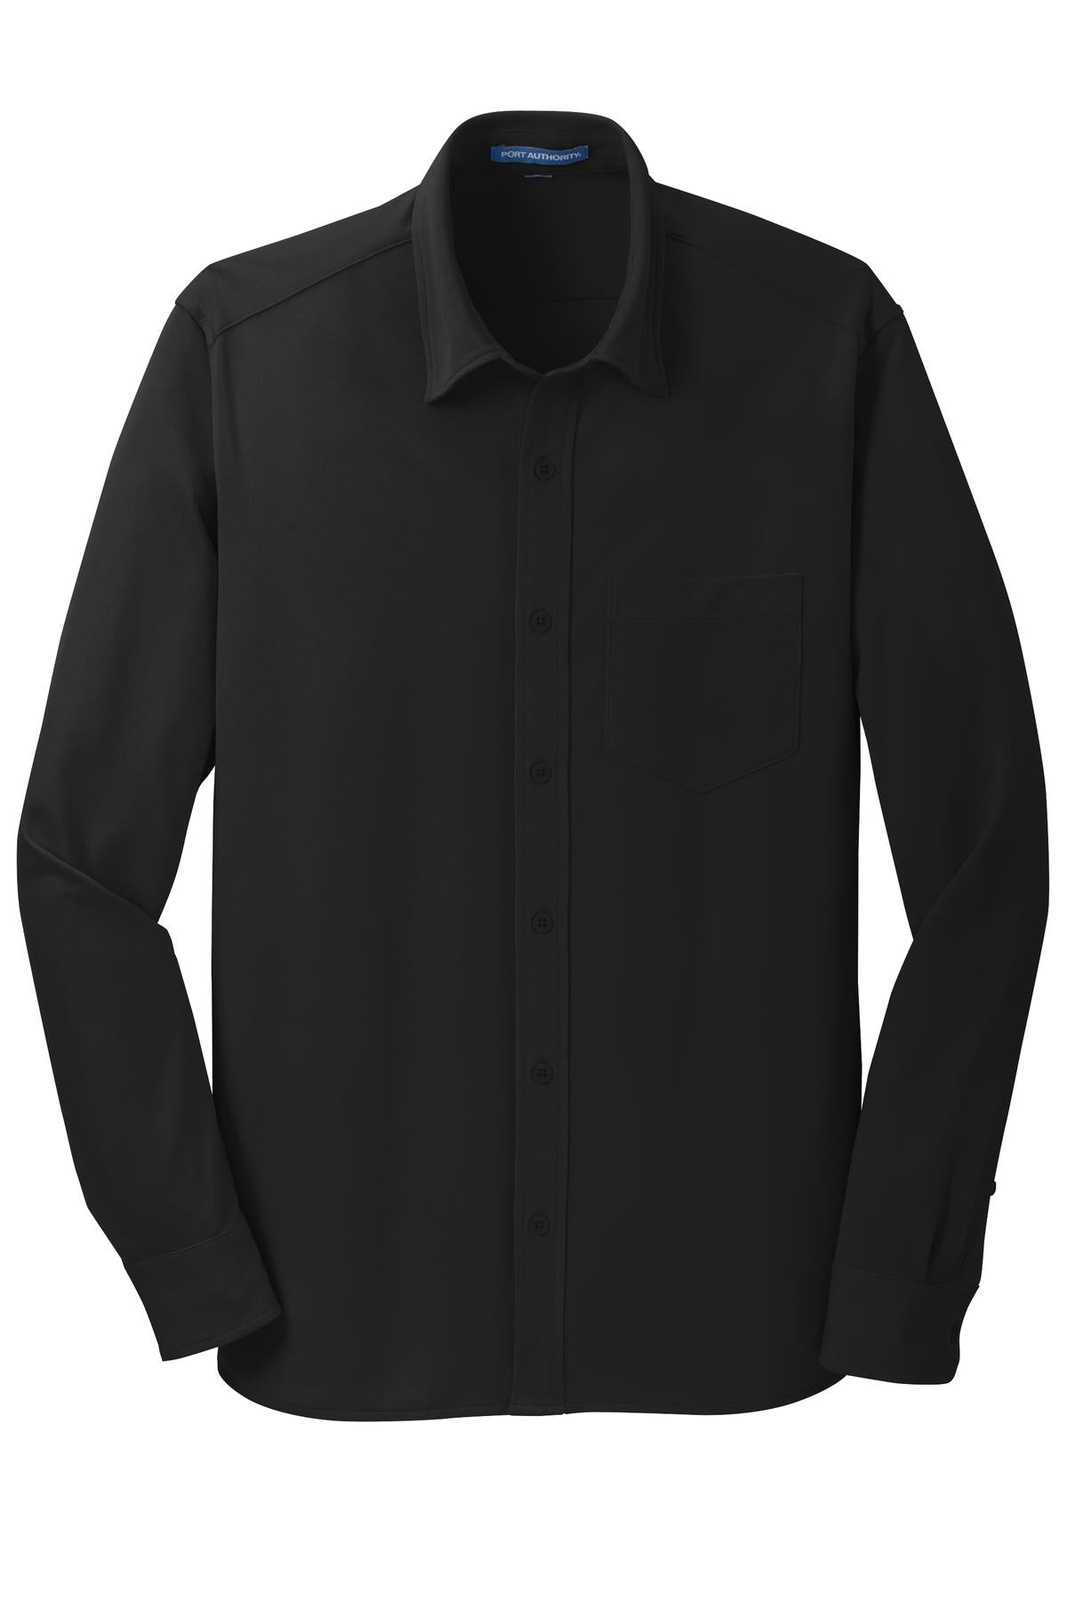 Port Authority K570 Dimension Knit Dress Shirt - Black - HIT a Double - 5